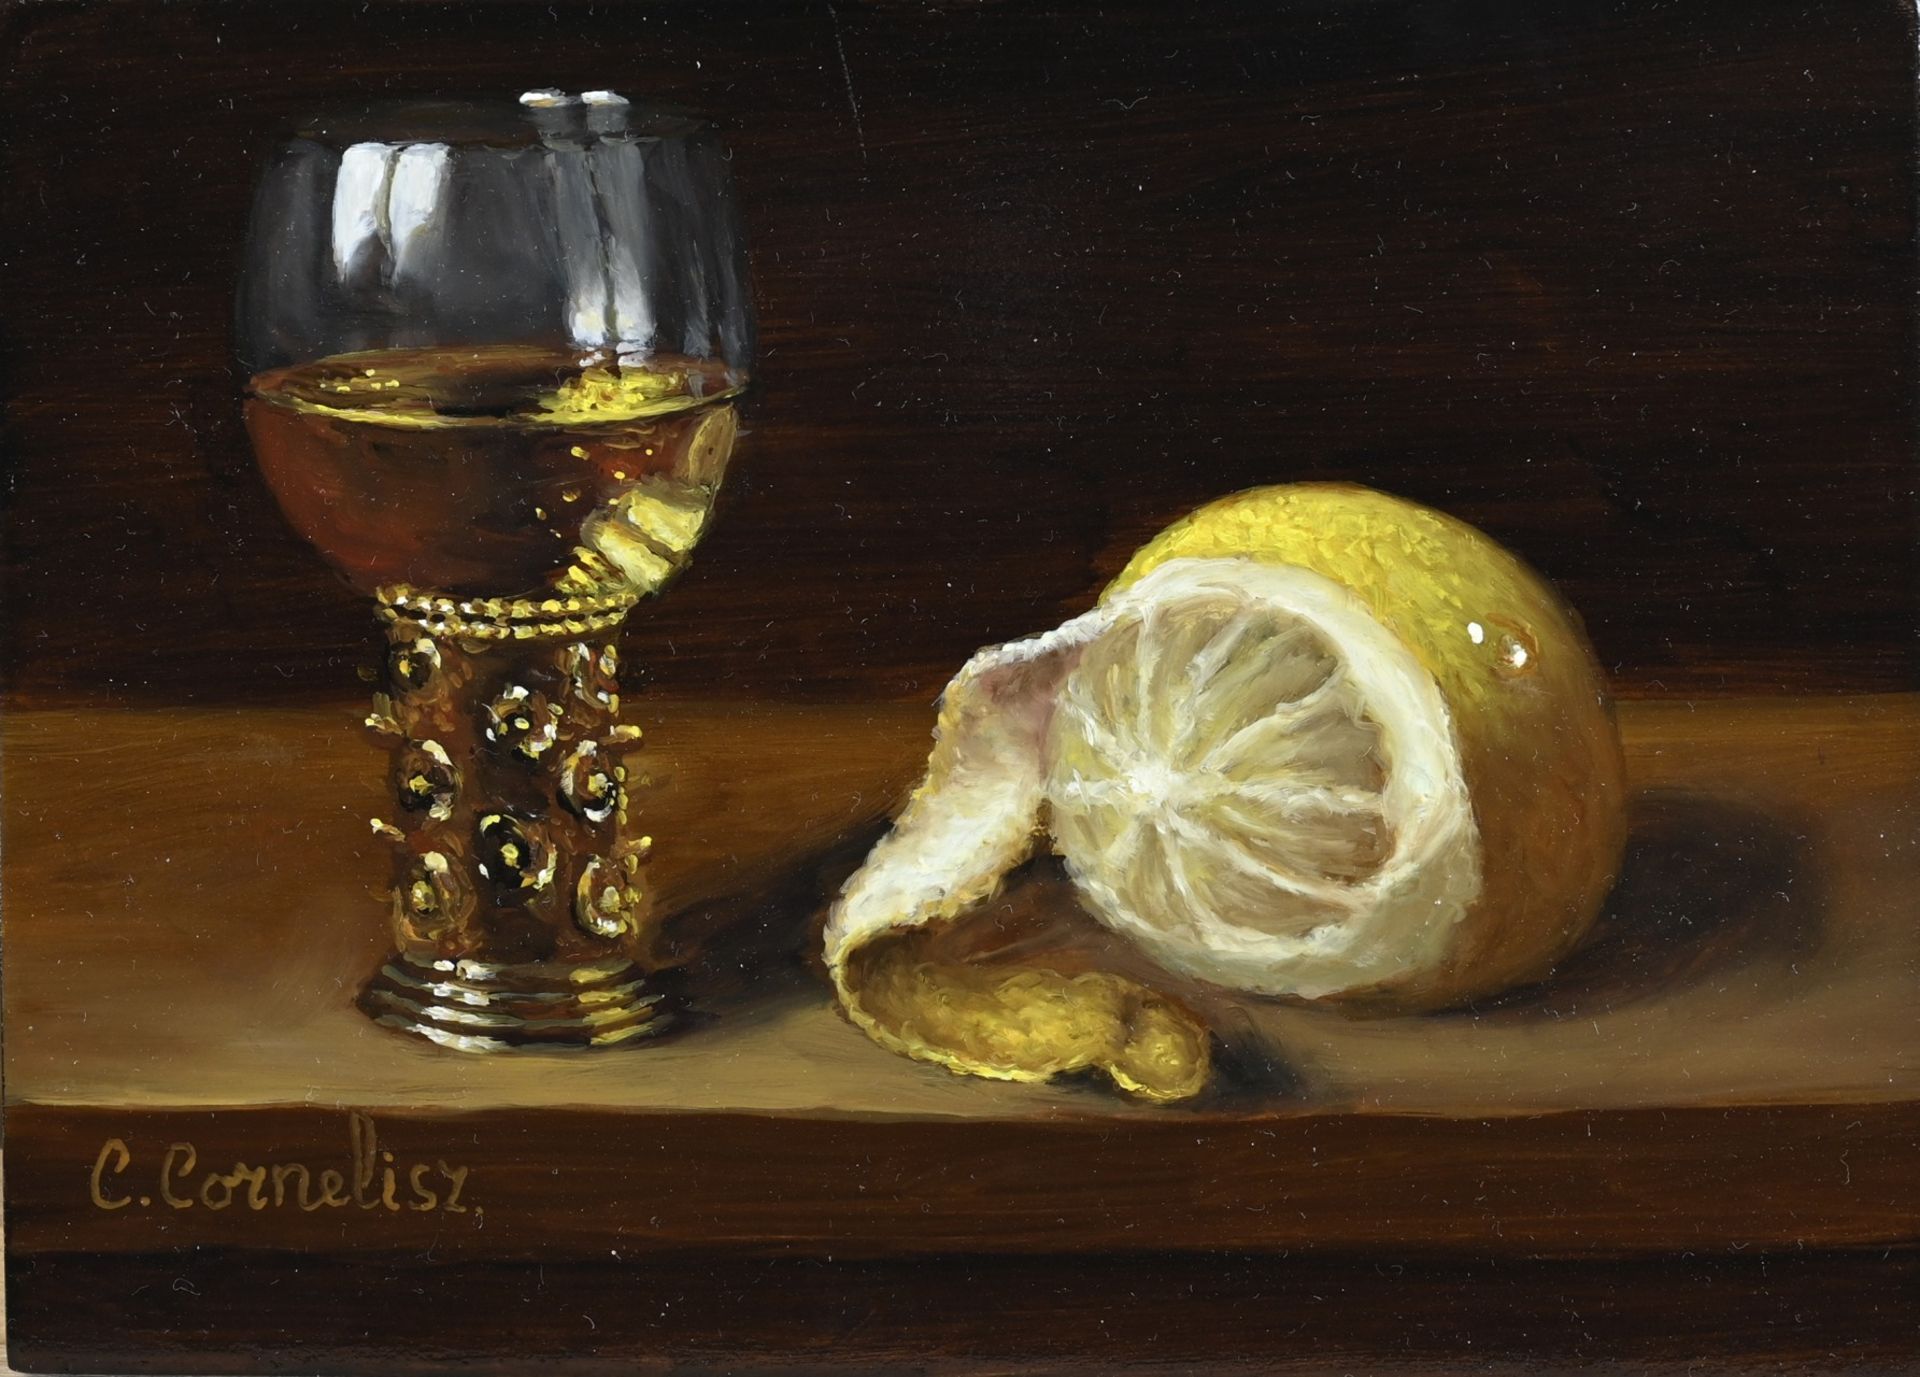 C. Cornelisz, Roemer with lemon